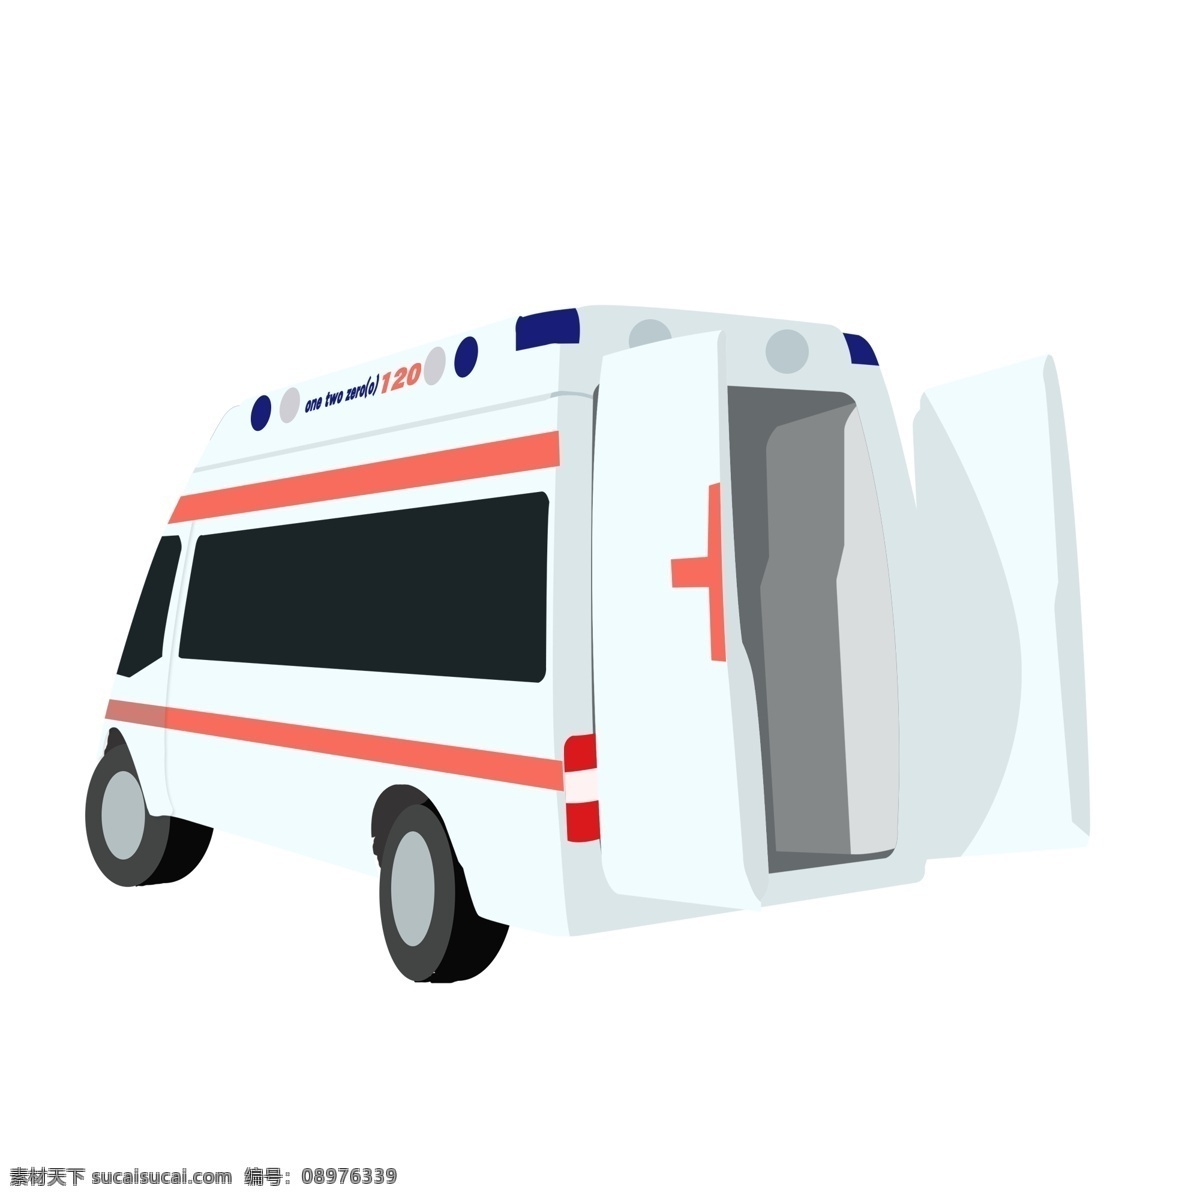 手绘 辆 救护车 插画 商用 元素 急救 交通工具 医疗 psd设计